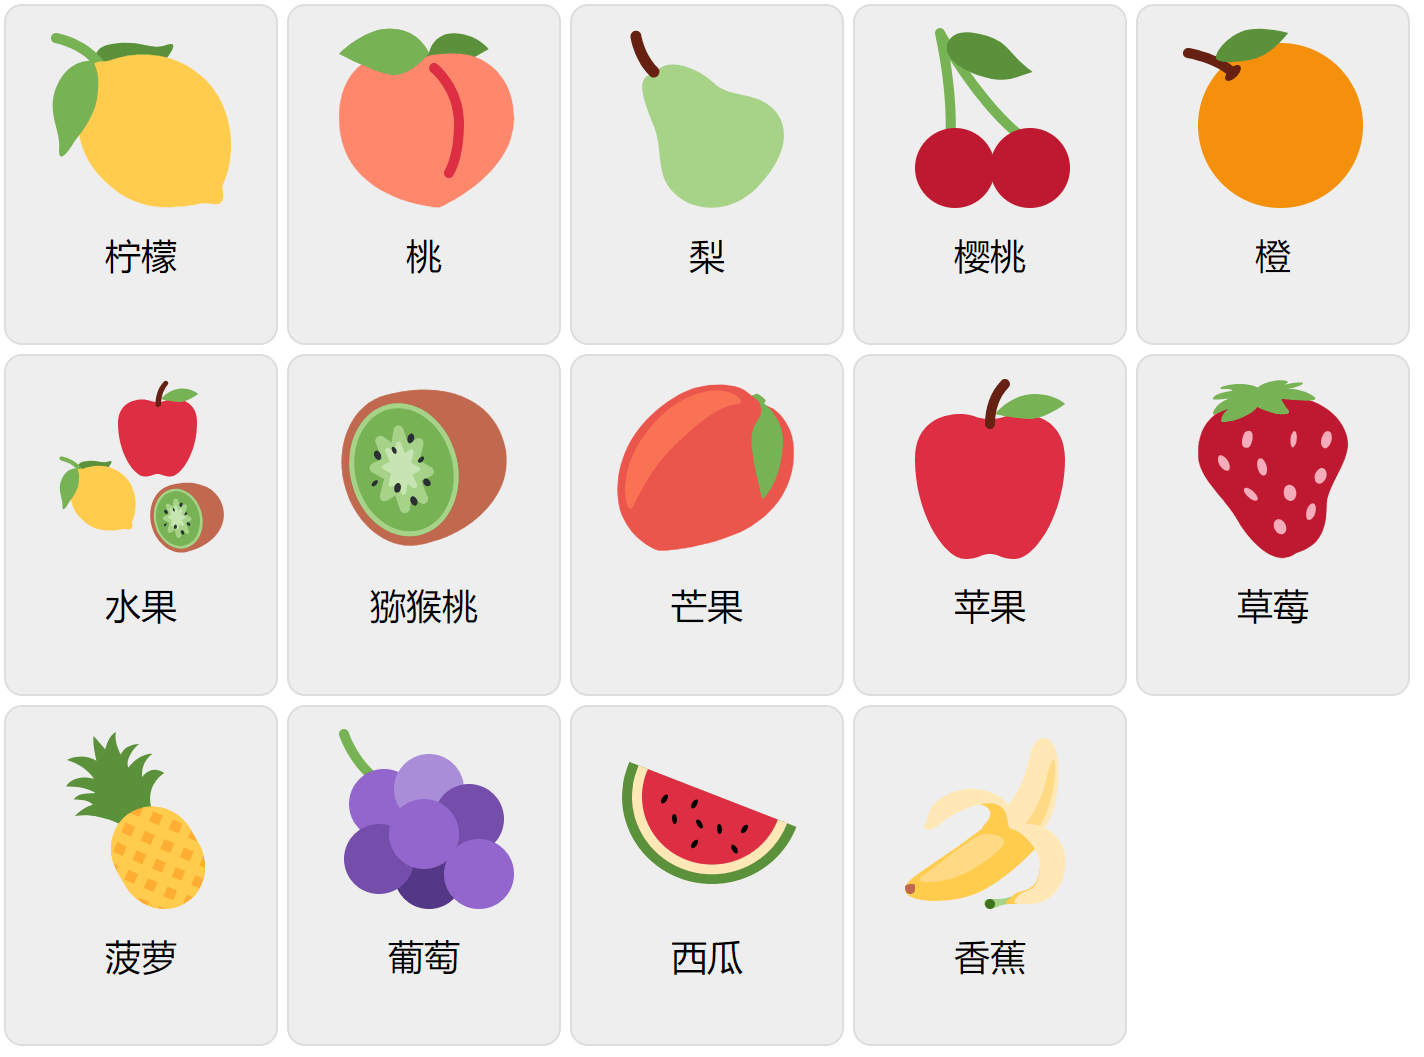 Früchte auf Mandarin-Chinesisch